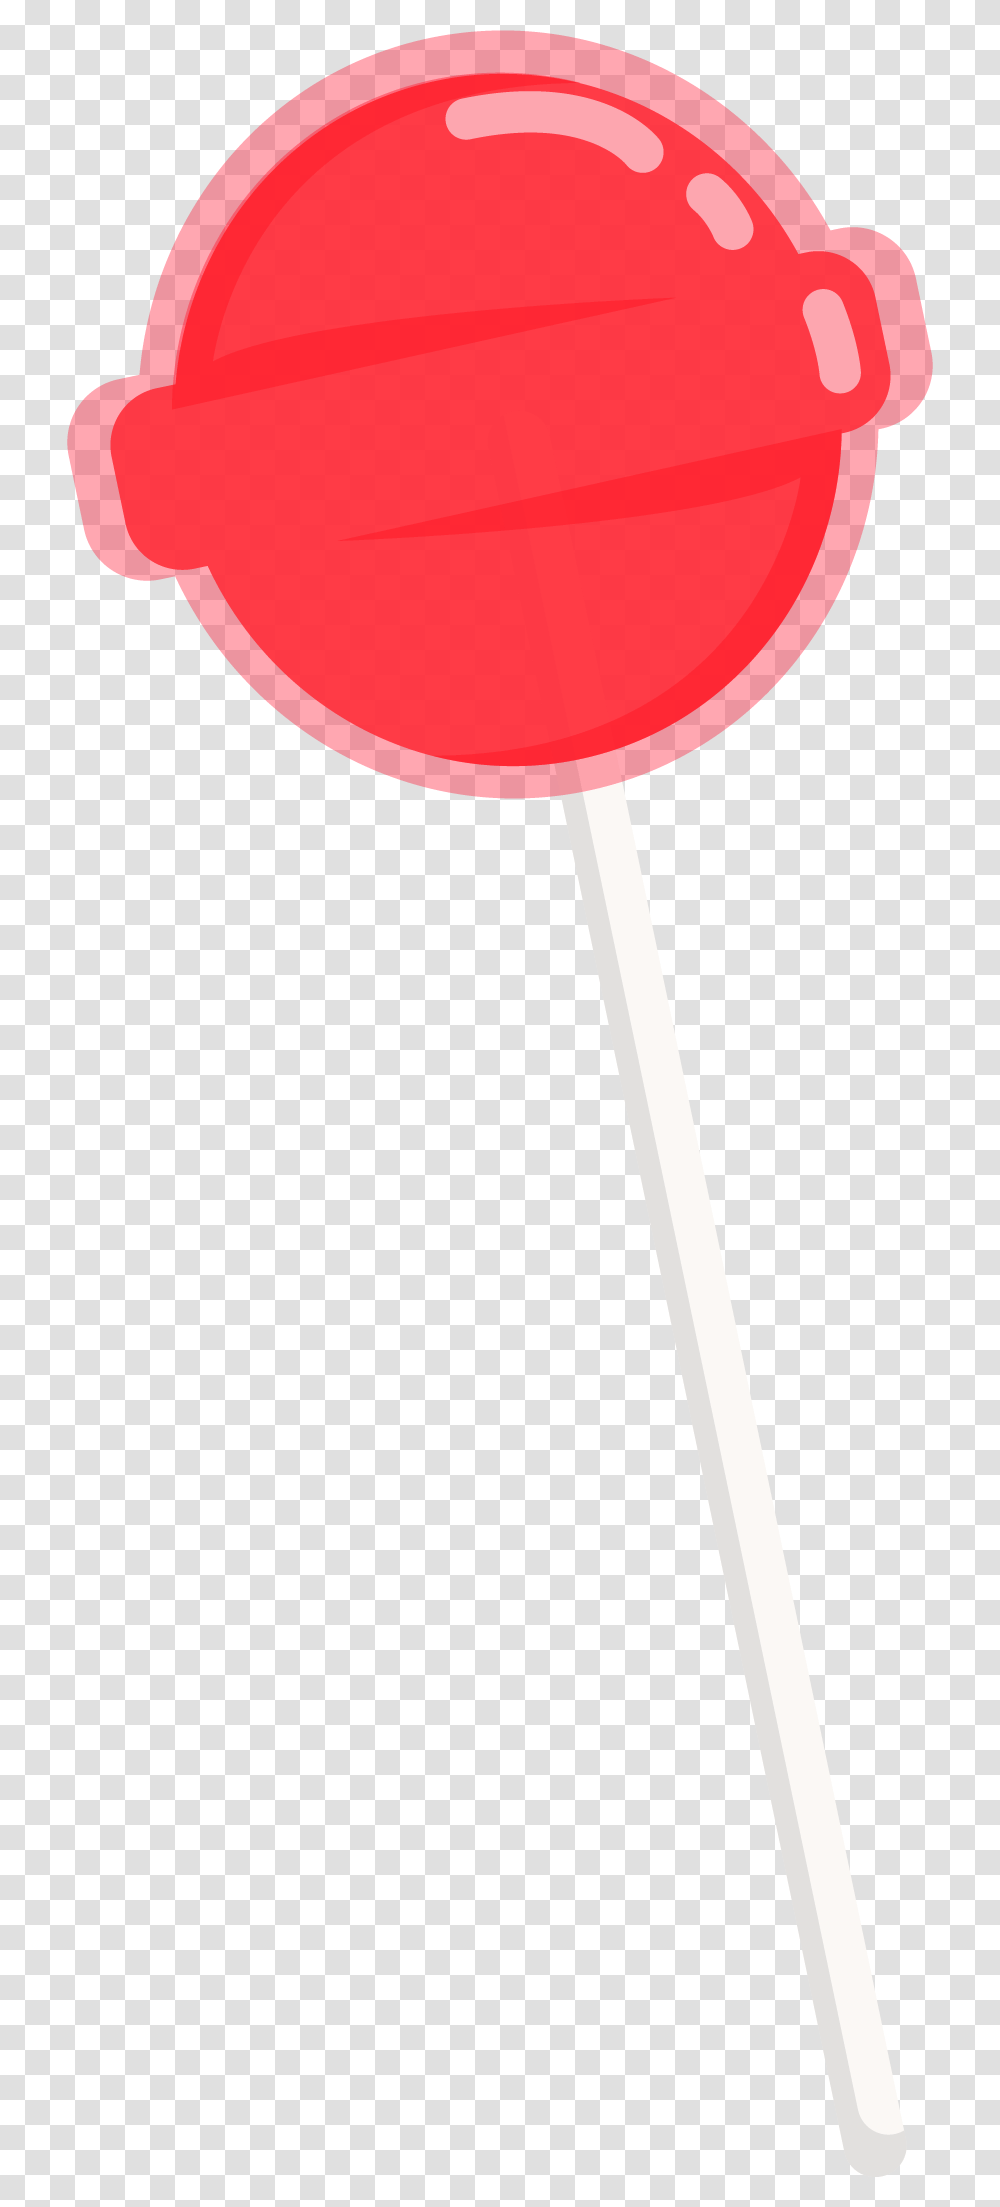 Clip Art, Lollipop, Candy, Food, Lamp Transparent Png